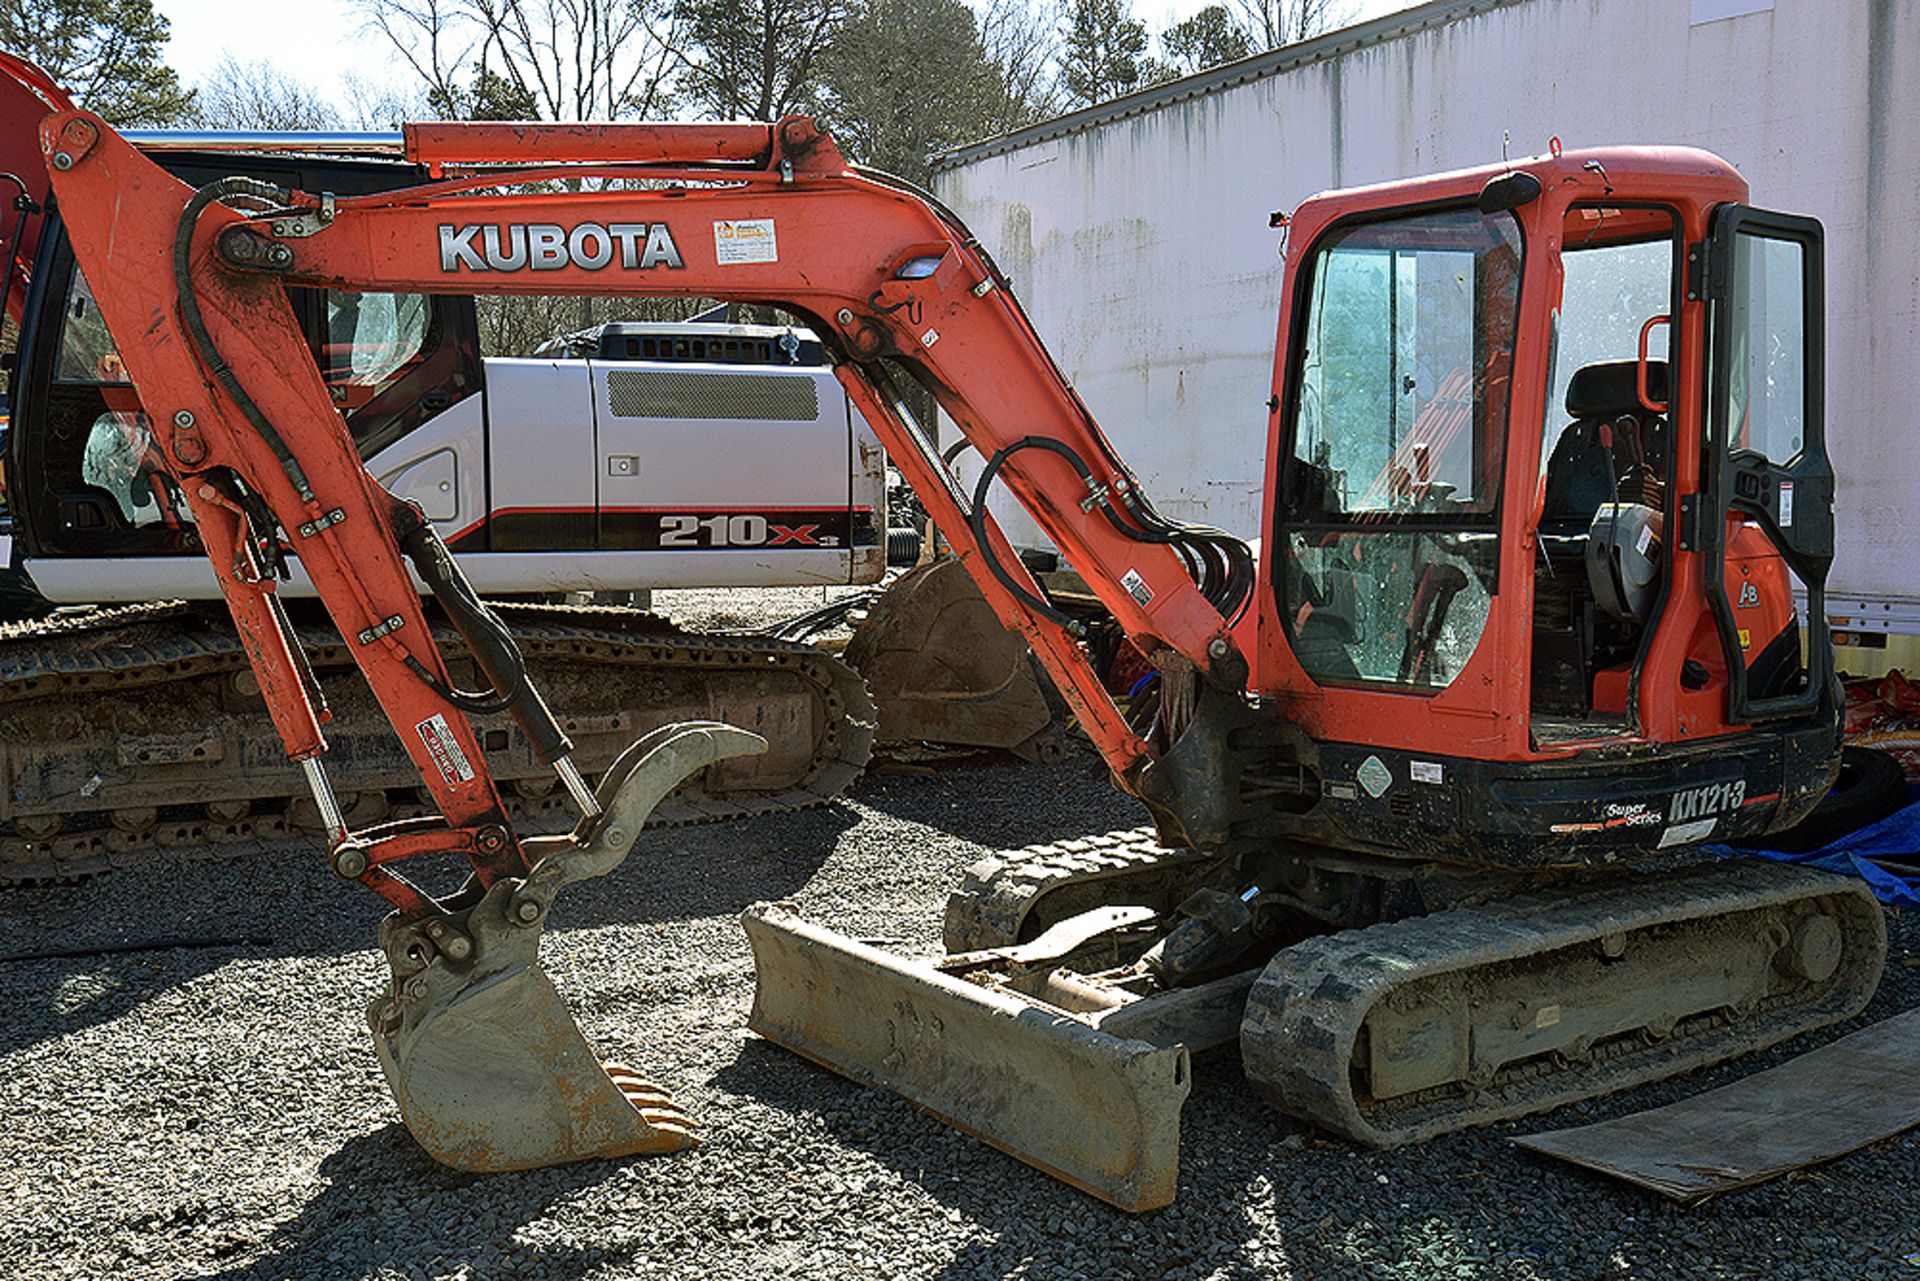 2013 Kubota Model Kx121-3St Mini Excavator, S/N 75733 (2013) 3,162.6 Hours Indicated w/EROPS